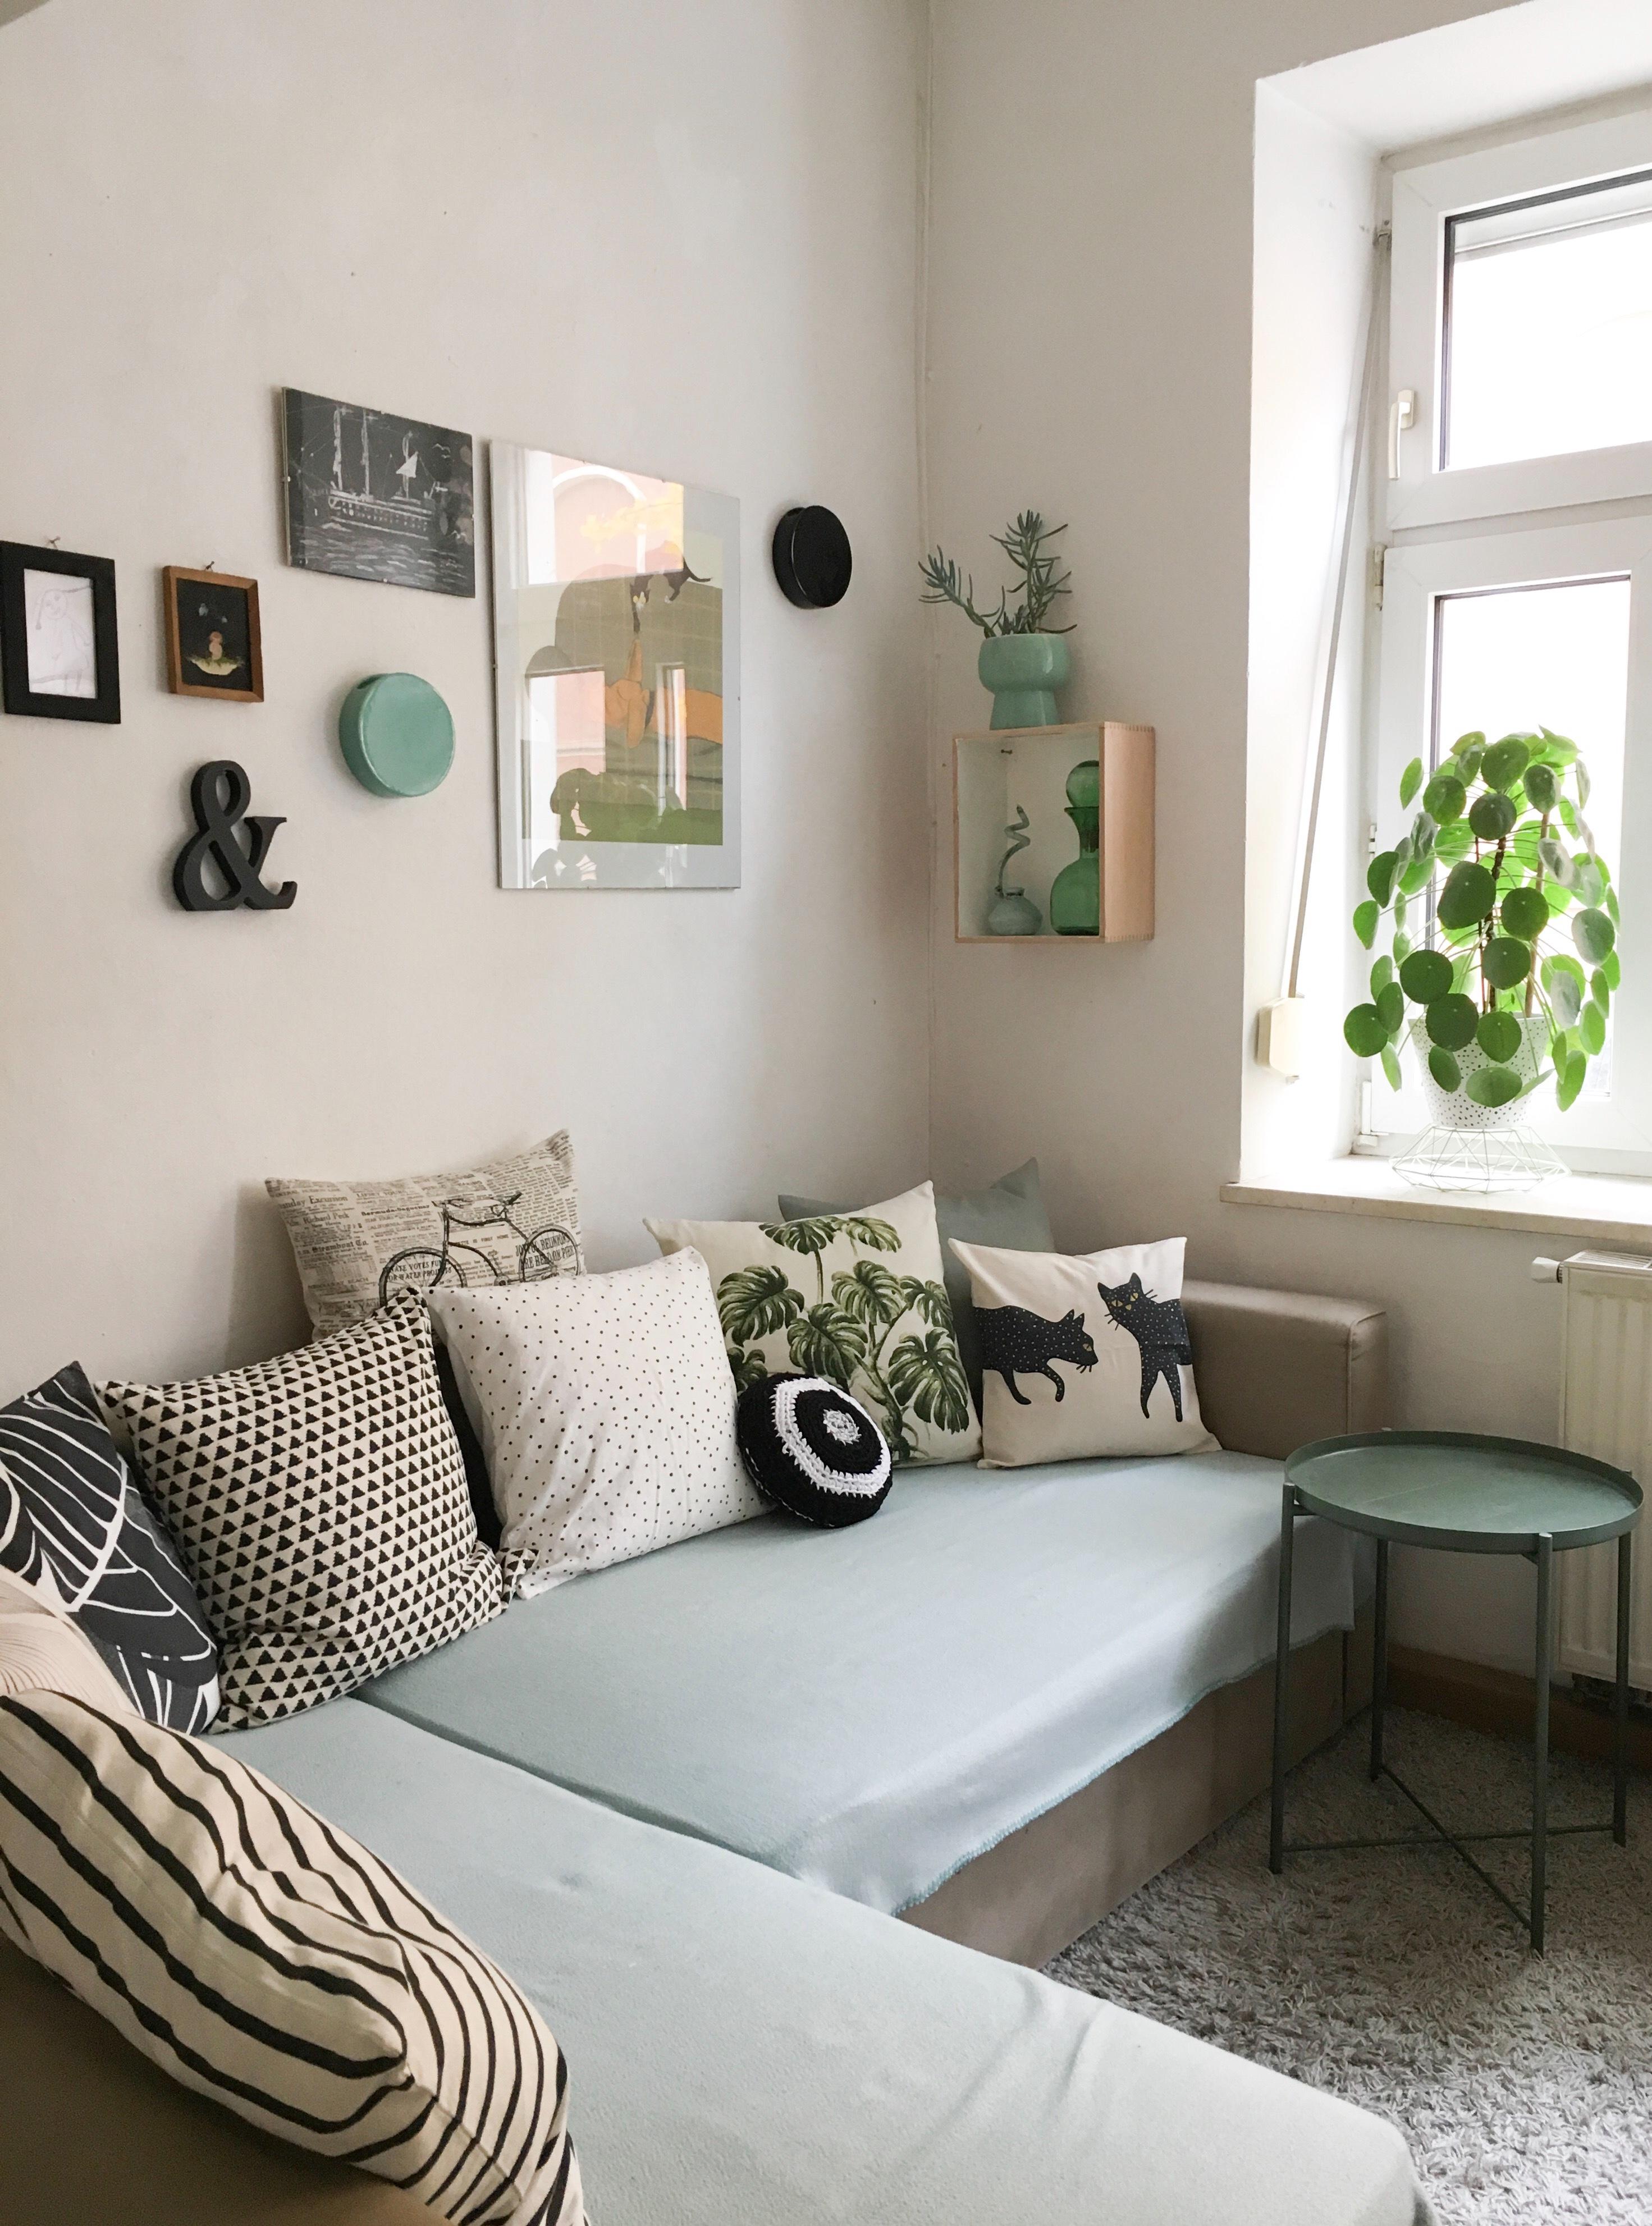 Neues Lumikello Kissen 🖤 Dafür wird gleich mal ein bisschen umdekoriert #wohnzimmer #kissen #sofa 